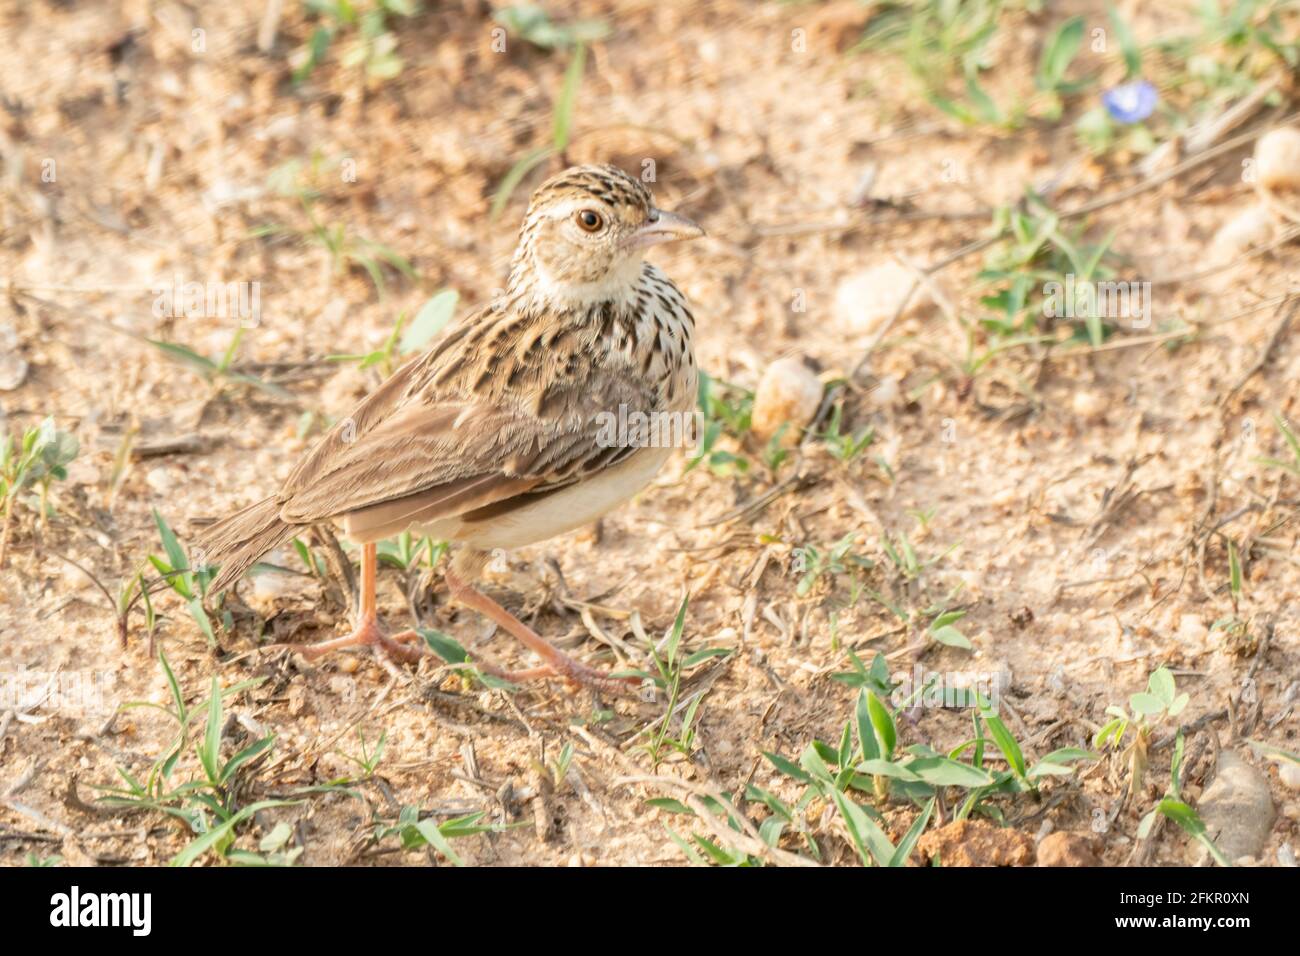 Jerdon's lark or Jerdon's bush lark, Mirafra affinis, single adult standing on sandy soil, Sri Lanka Stock Photo